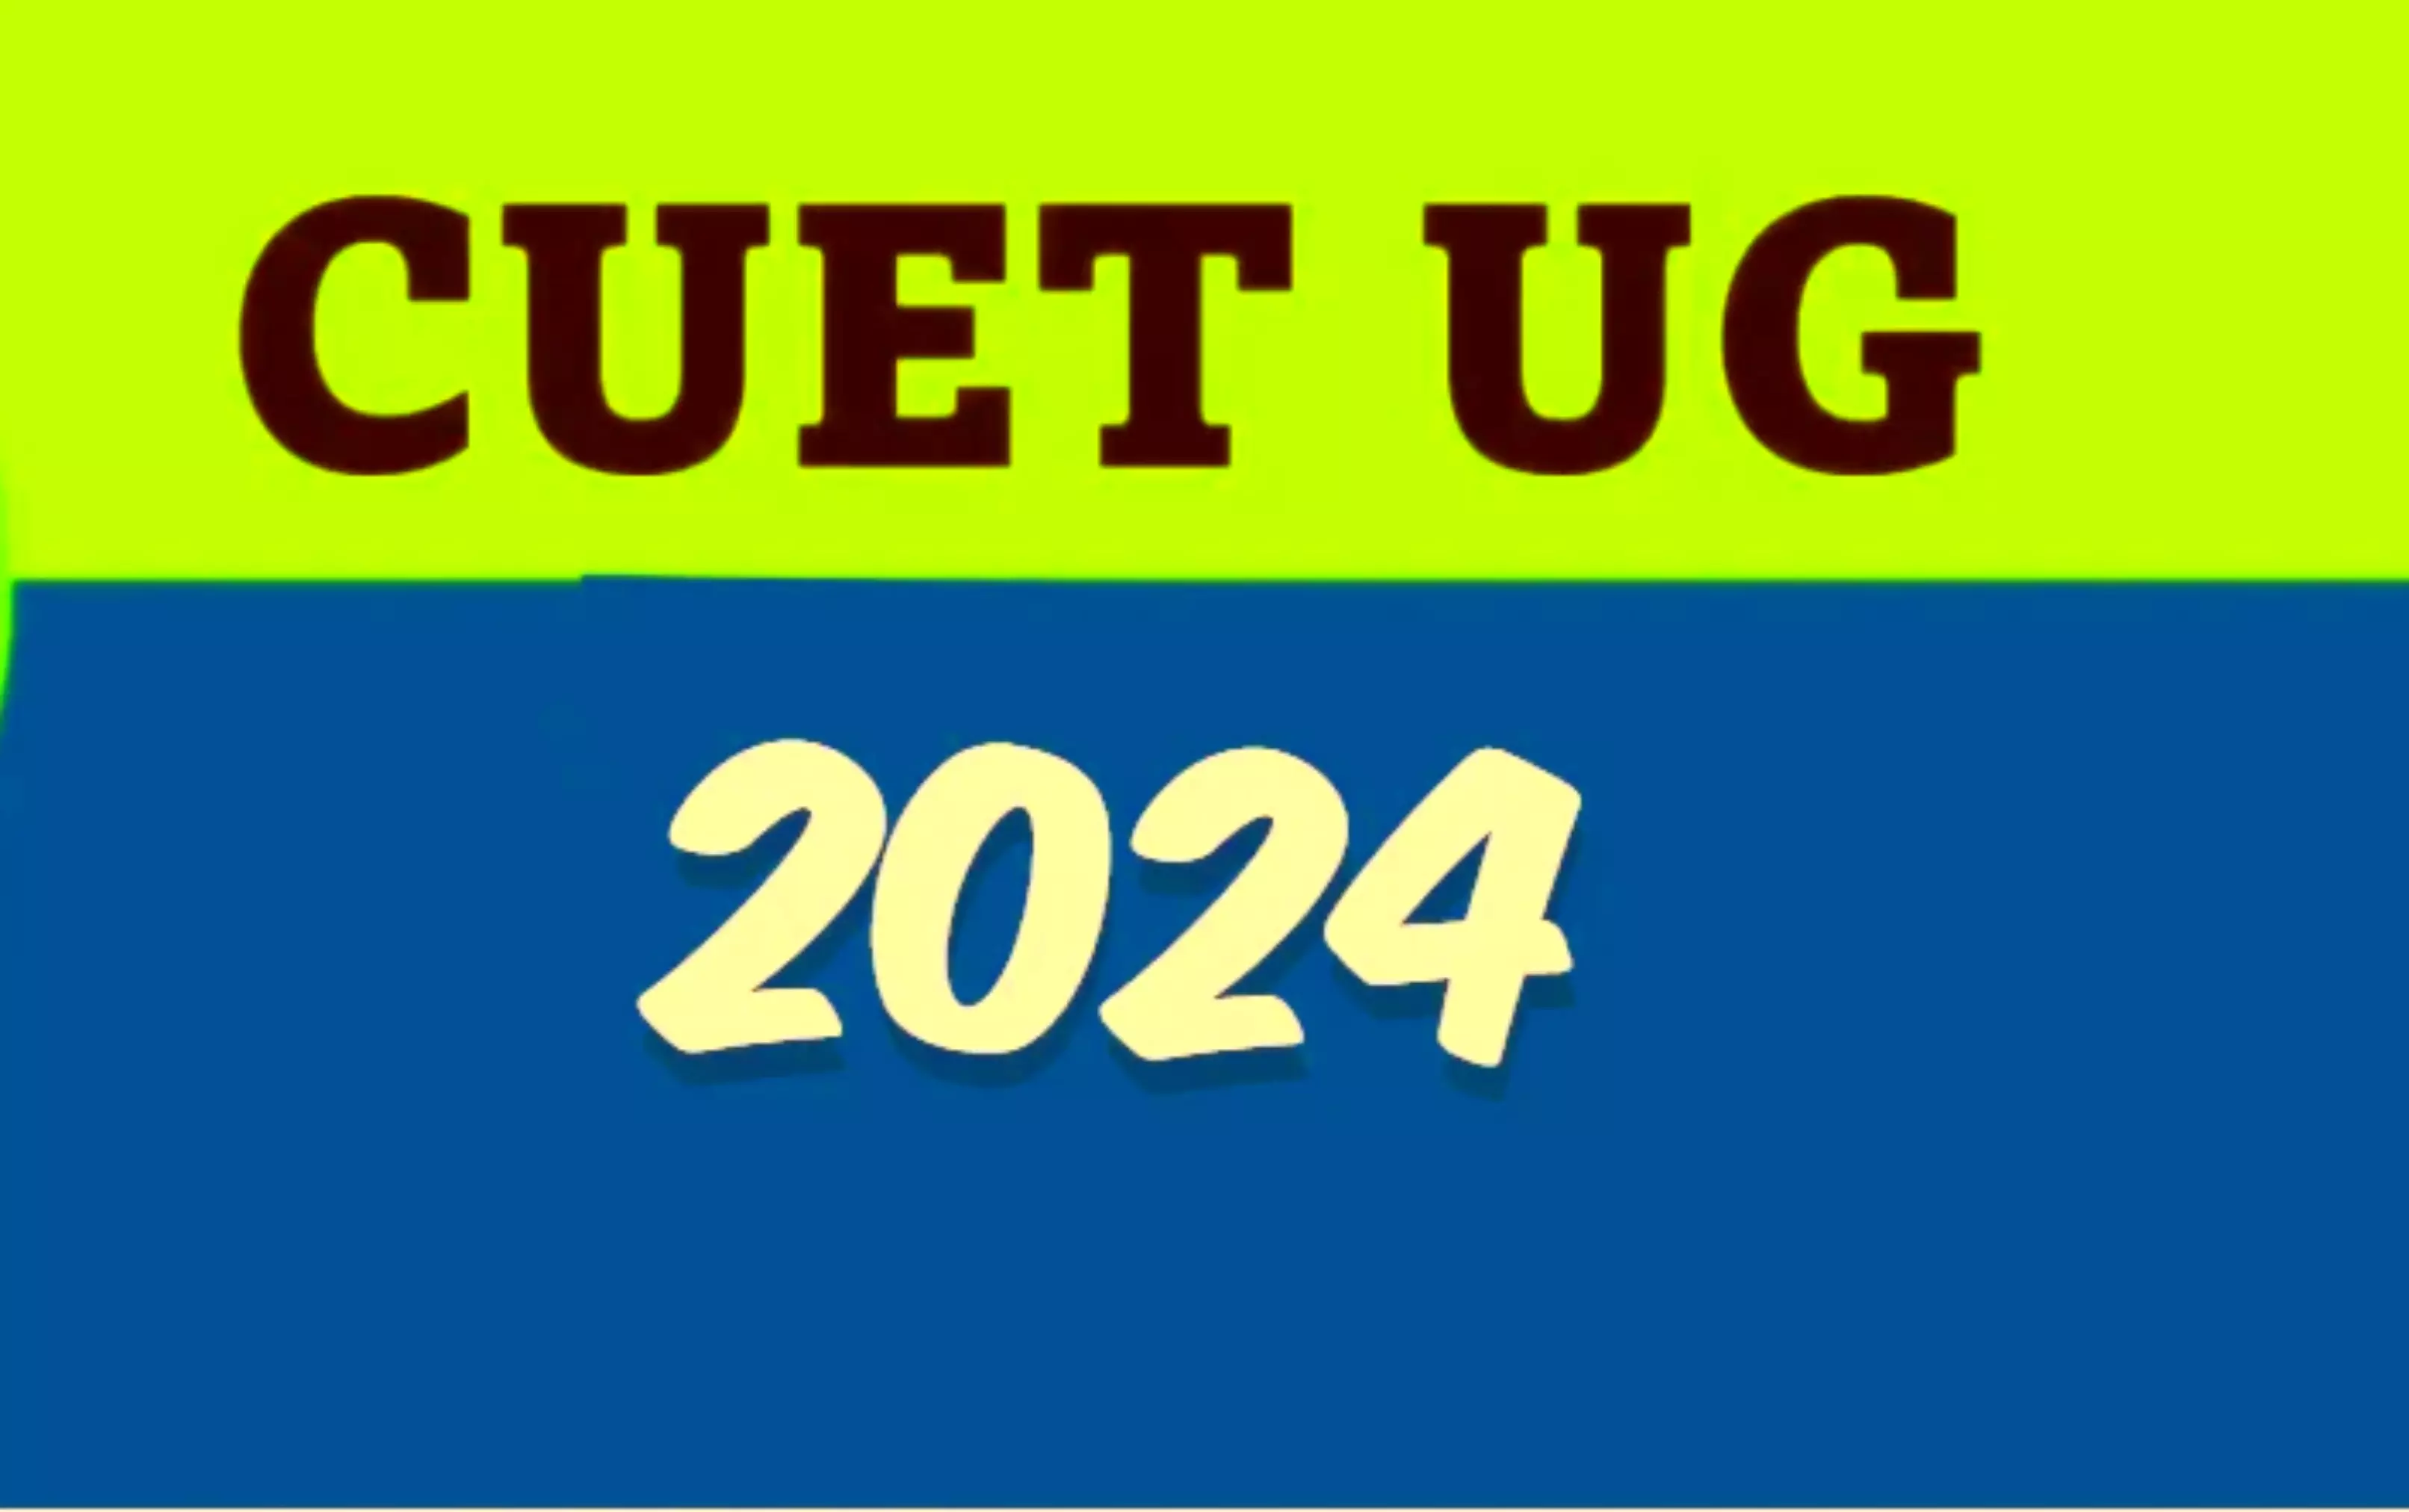 cuet result 2024: सीयूईटी यूजी परिणाम के बाद कैसी होगी कट ऑफ, कौन से टॉप कॉलेज में मिलेगा प्रवेश, जानें पूरा विवरण